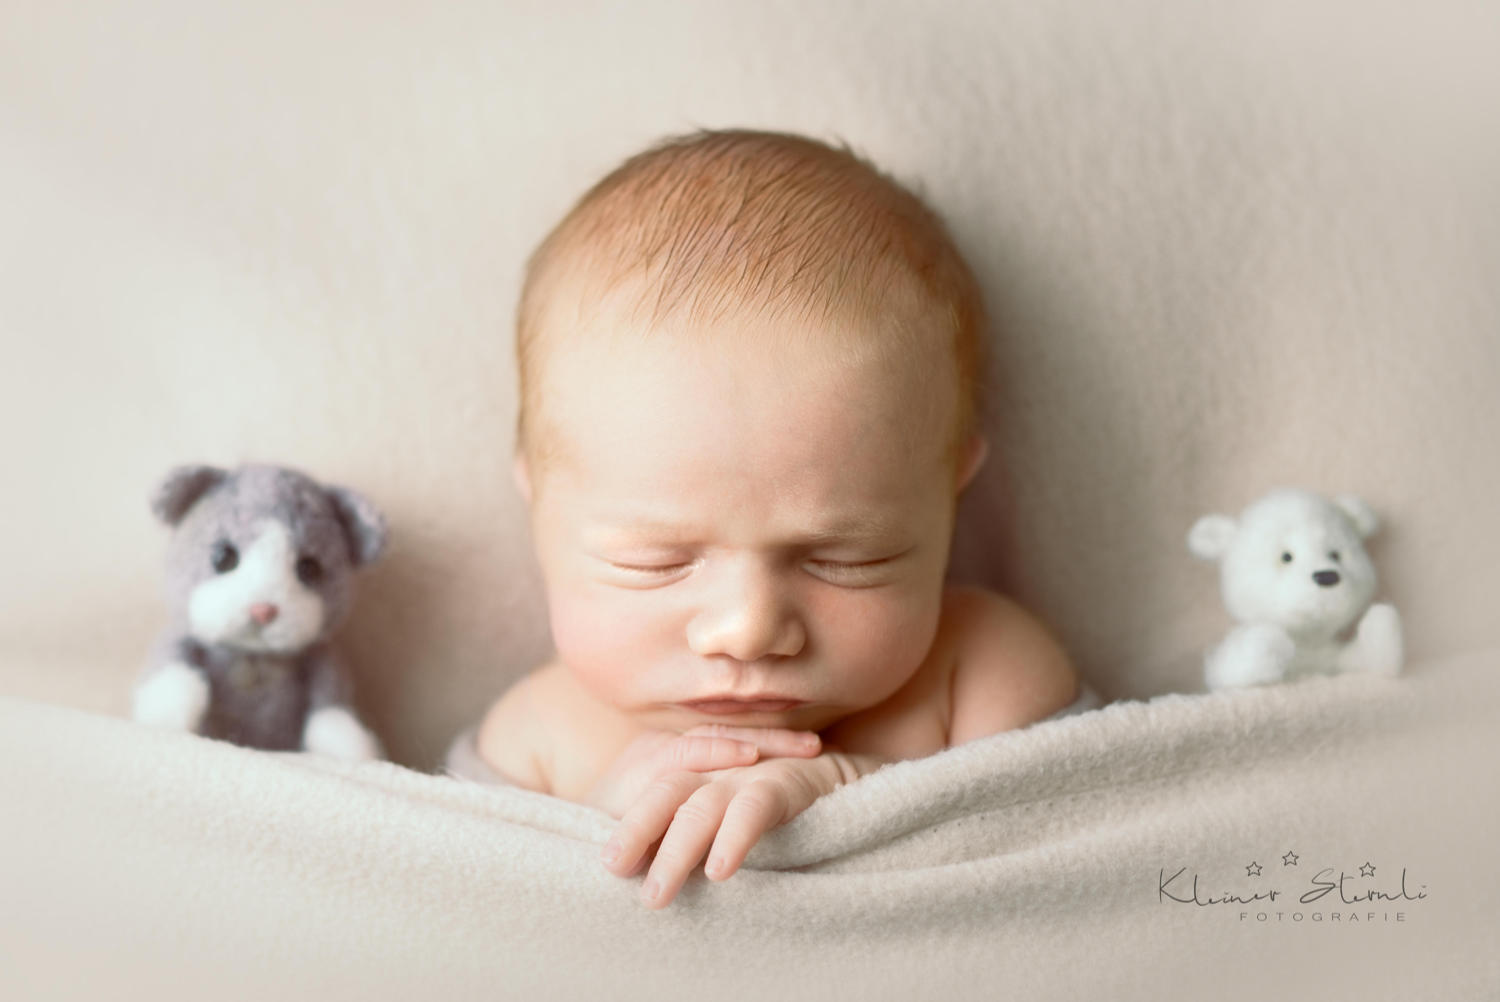 Fotografia de bebé recém nascido com brinquedo durante sessão fotográfica no Porto